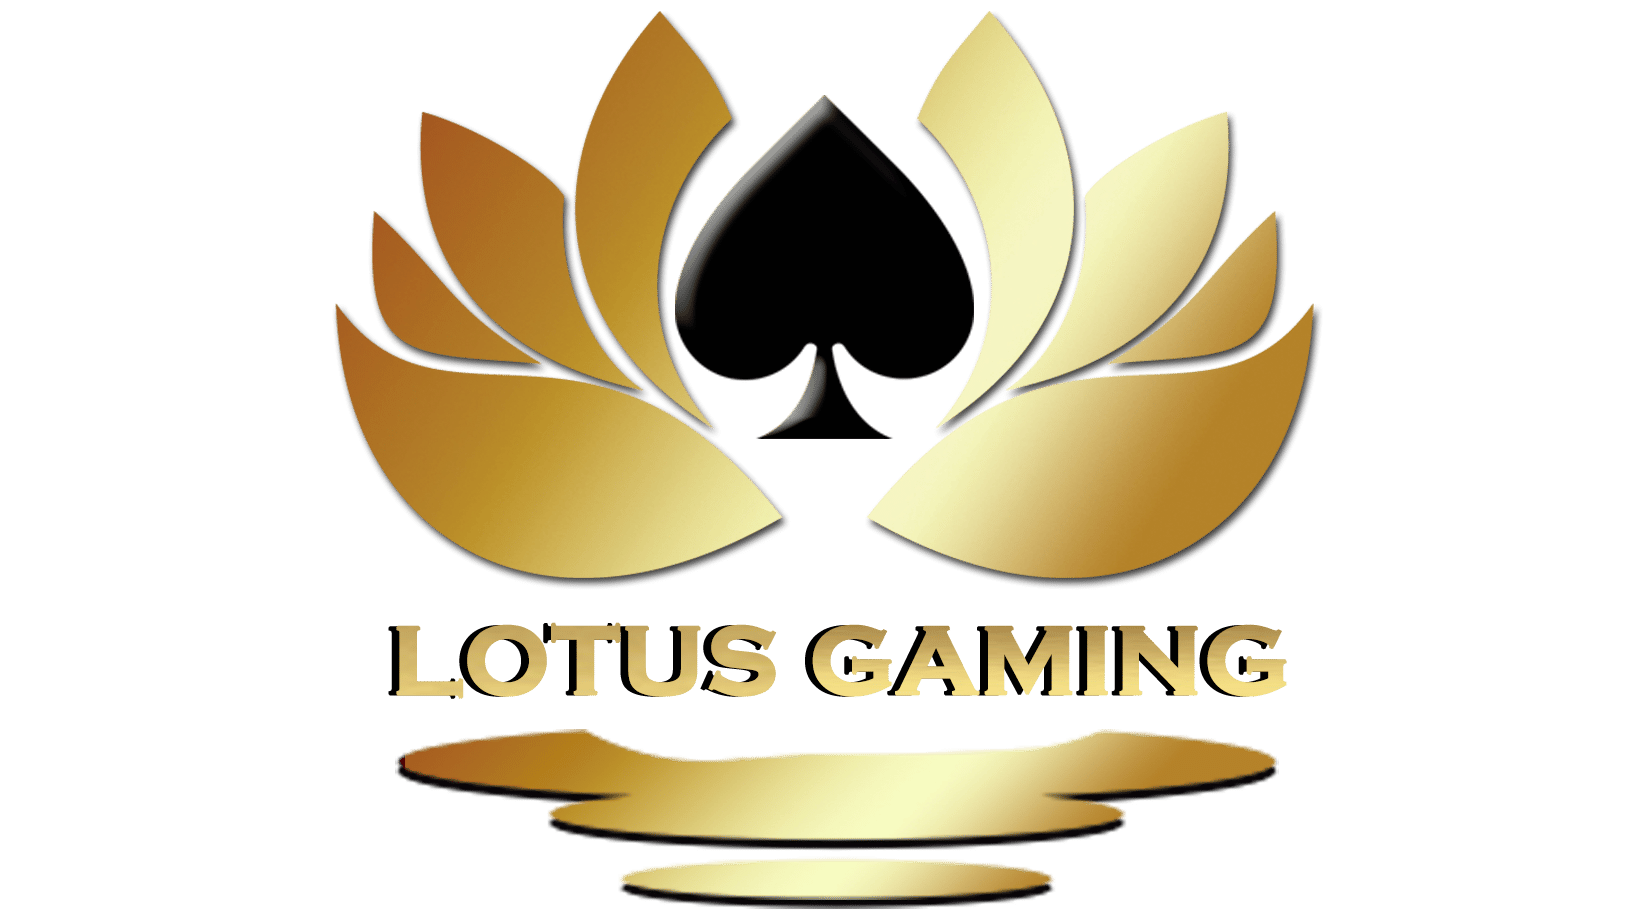 Lotus gaming